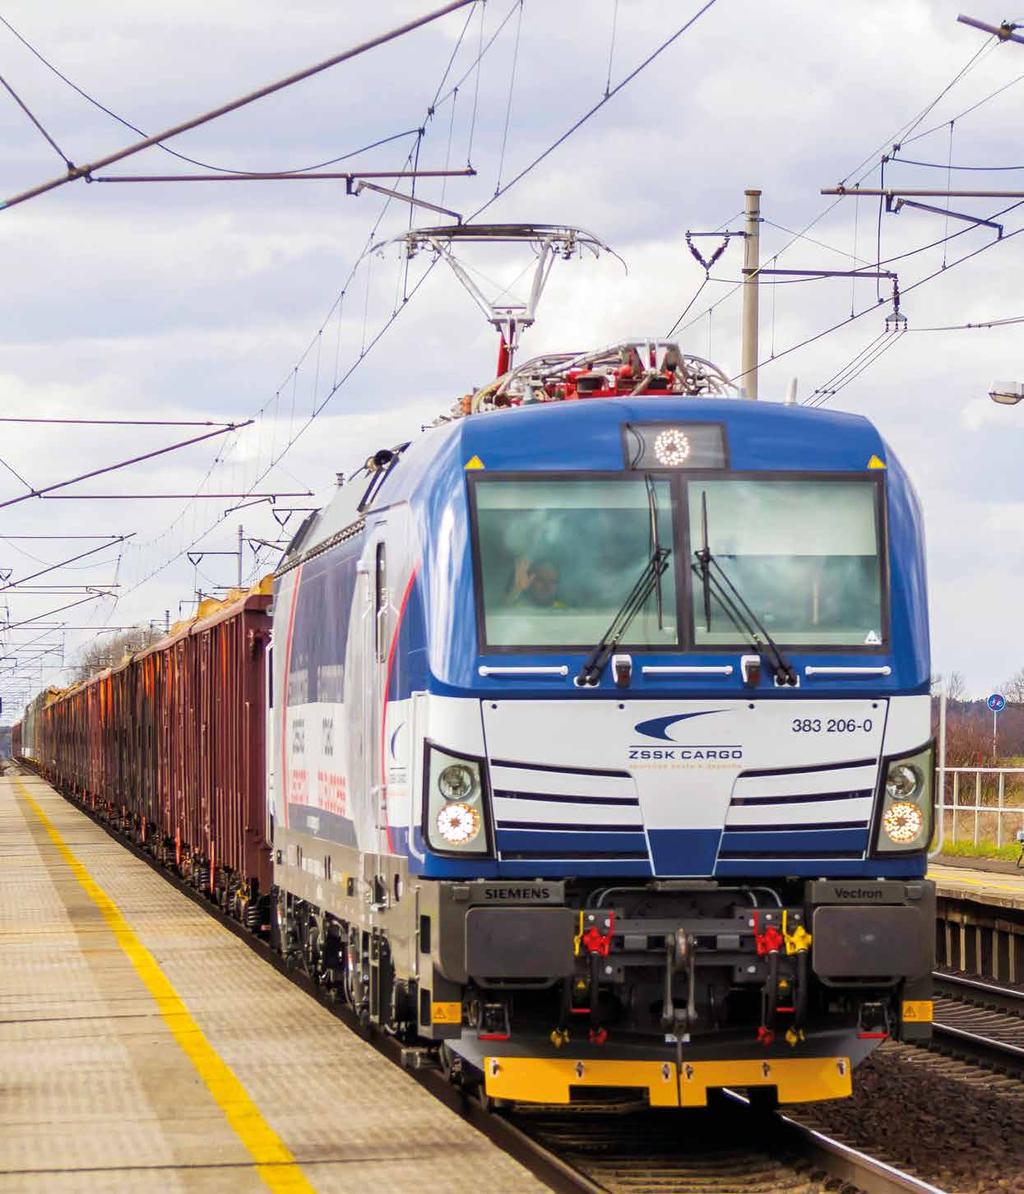 1/2019 Desať viacsystémových Vectronov pre rýchle a ekonomické prepravy Ten Vectron multi-system locomotives for fast and economical shipments Noemov vlak pre našu